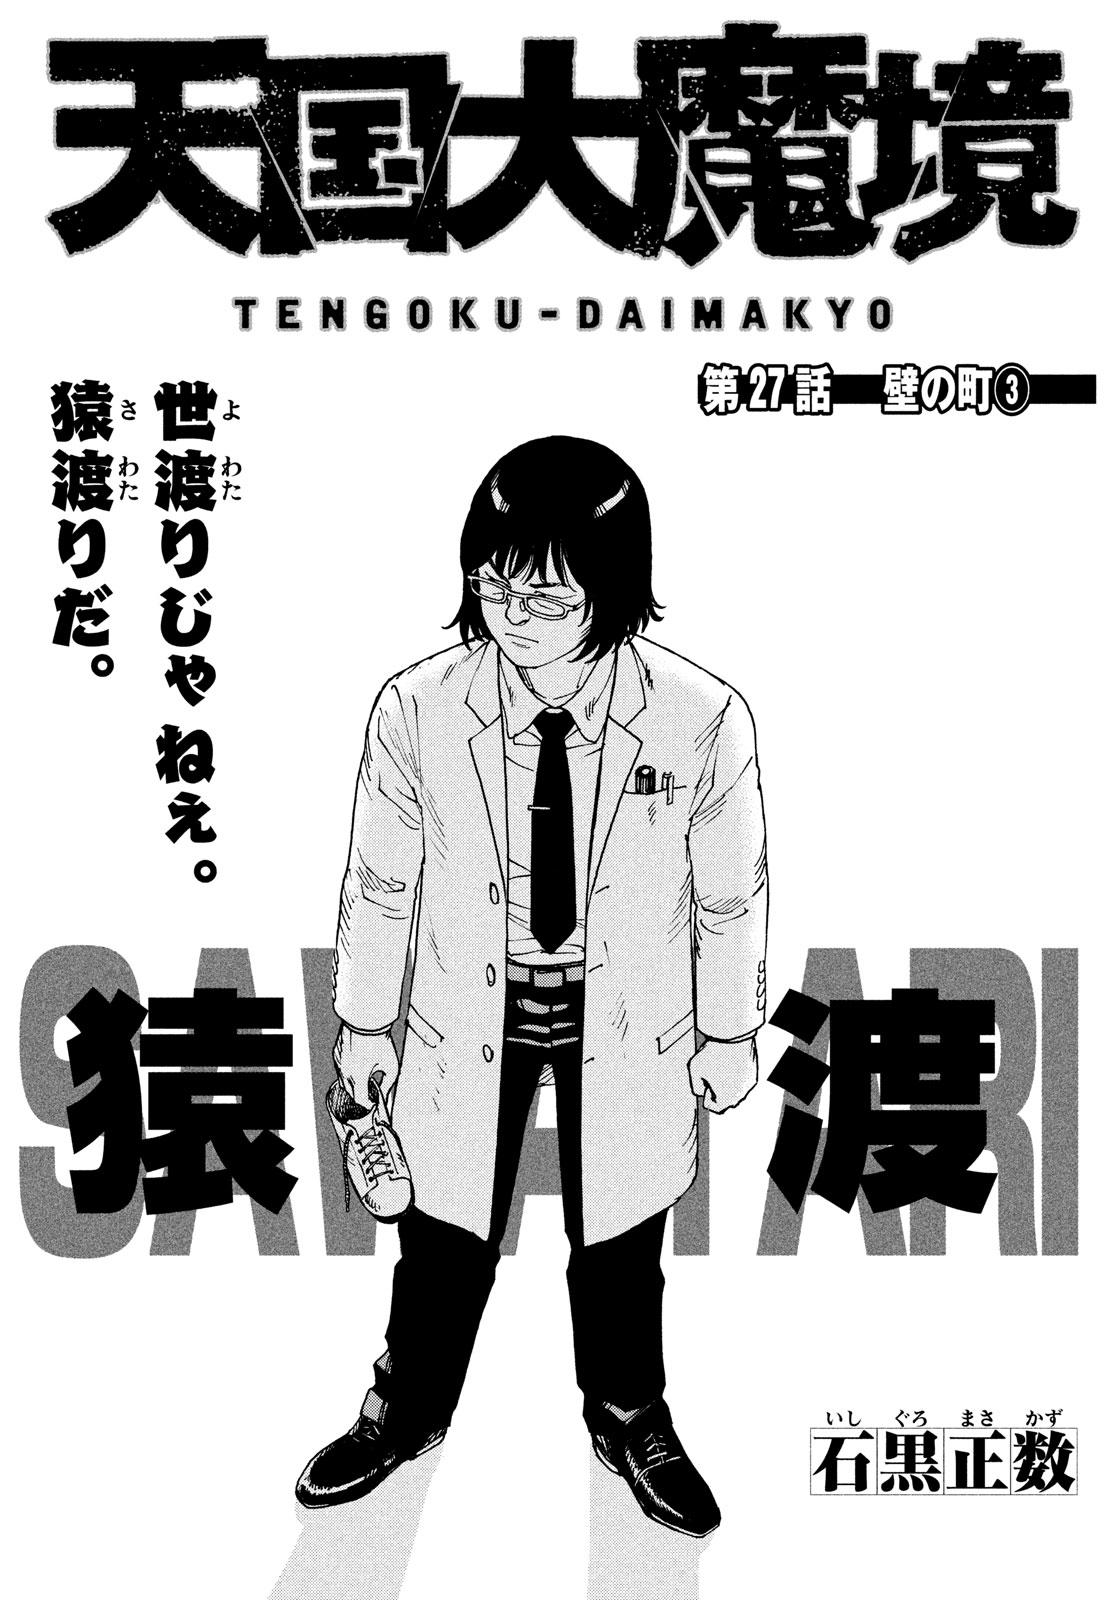 Read Tengoku Daimakyou Vol.4 Chapter 20: Immortalites ➂ - Manganelo